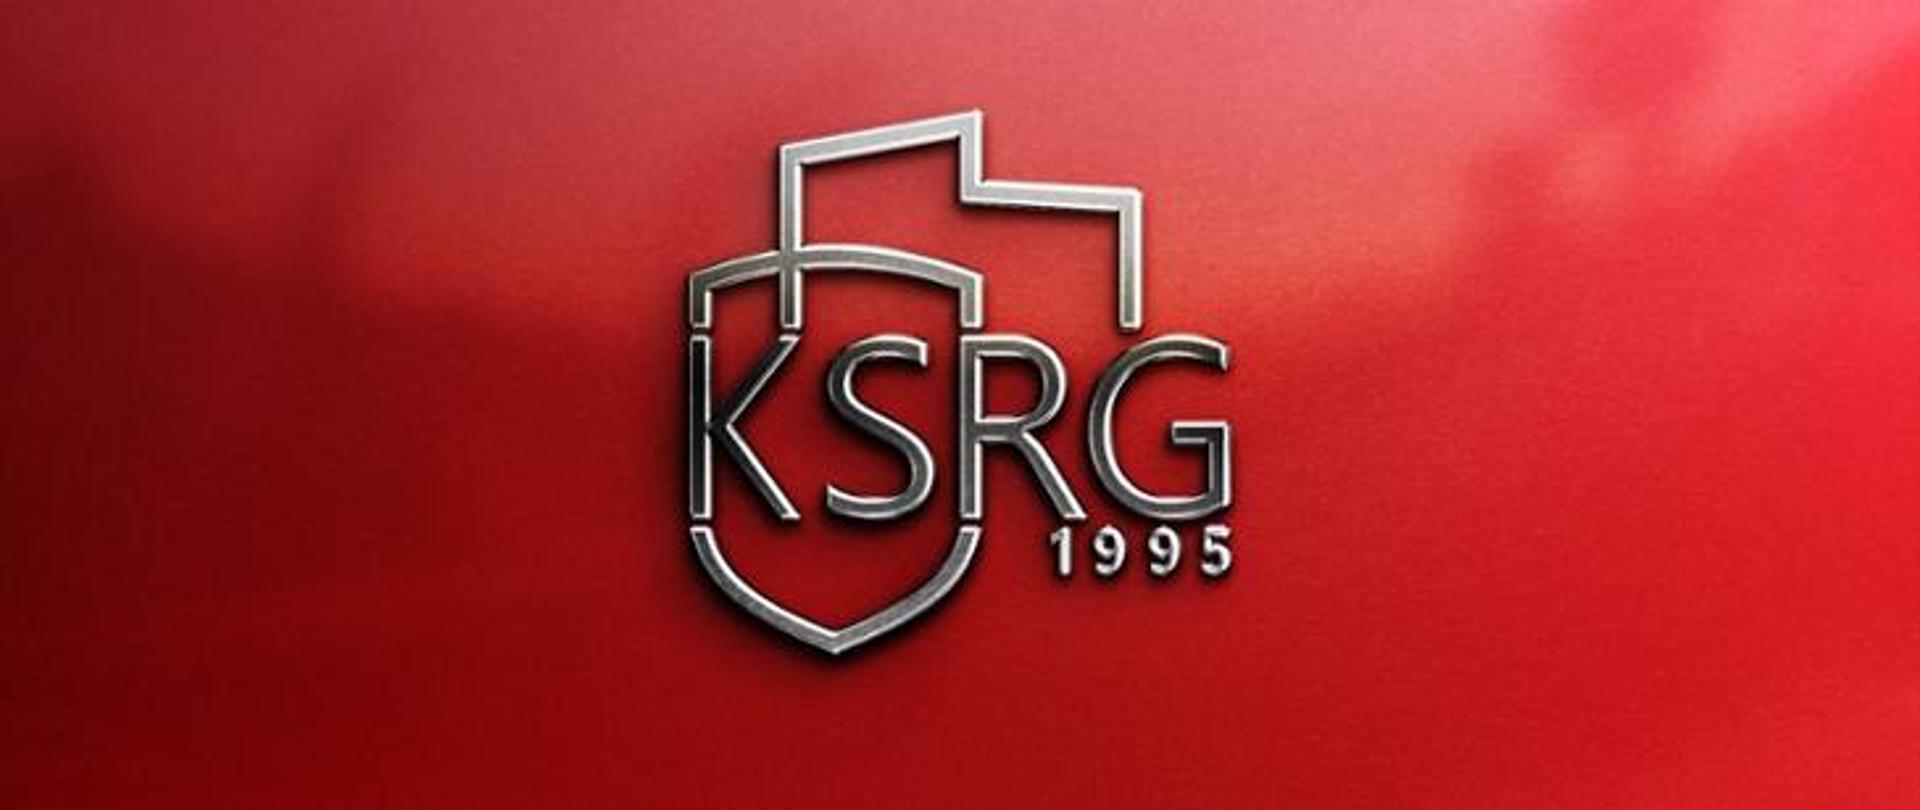 Nowe logo KSRG na czerwonym tle